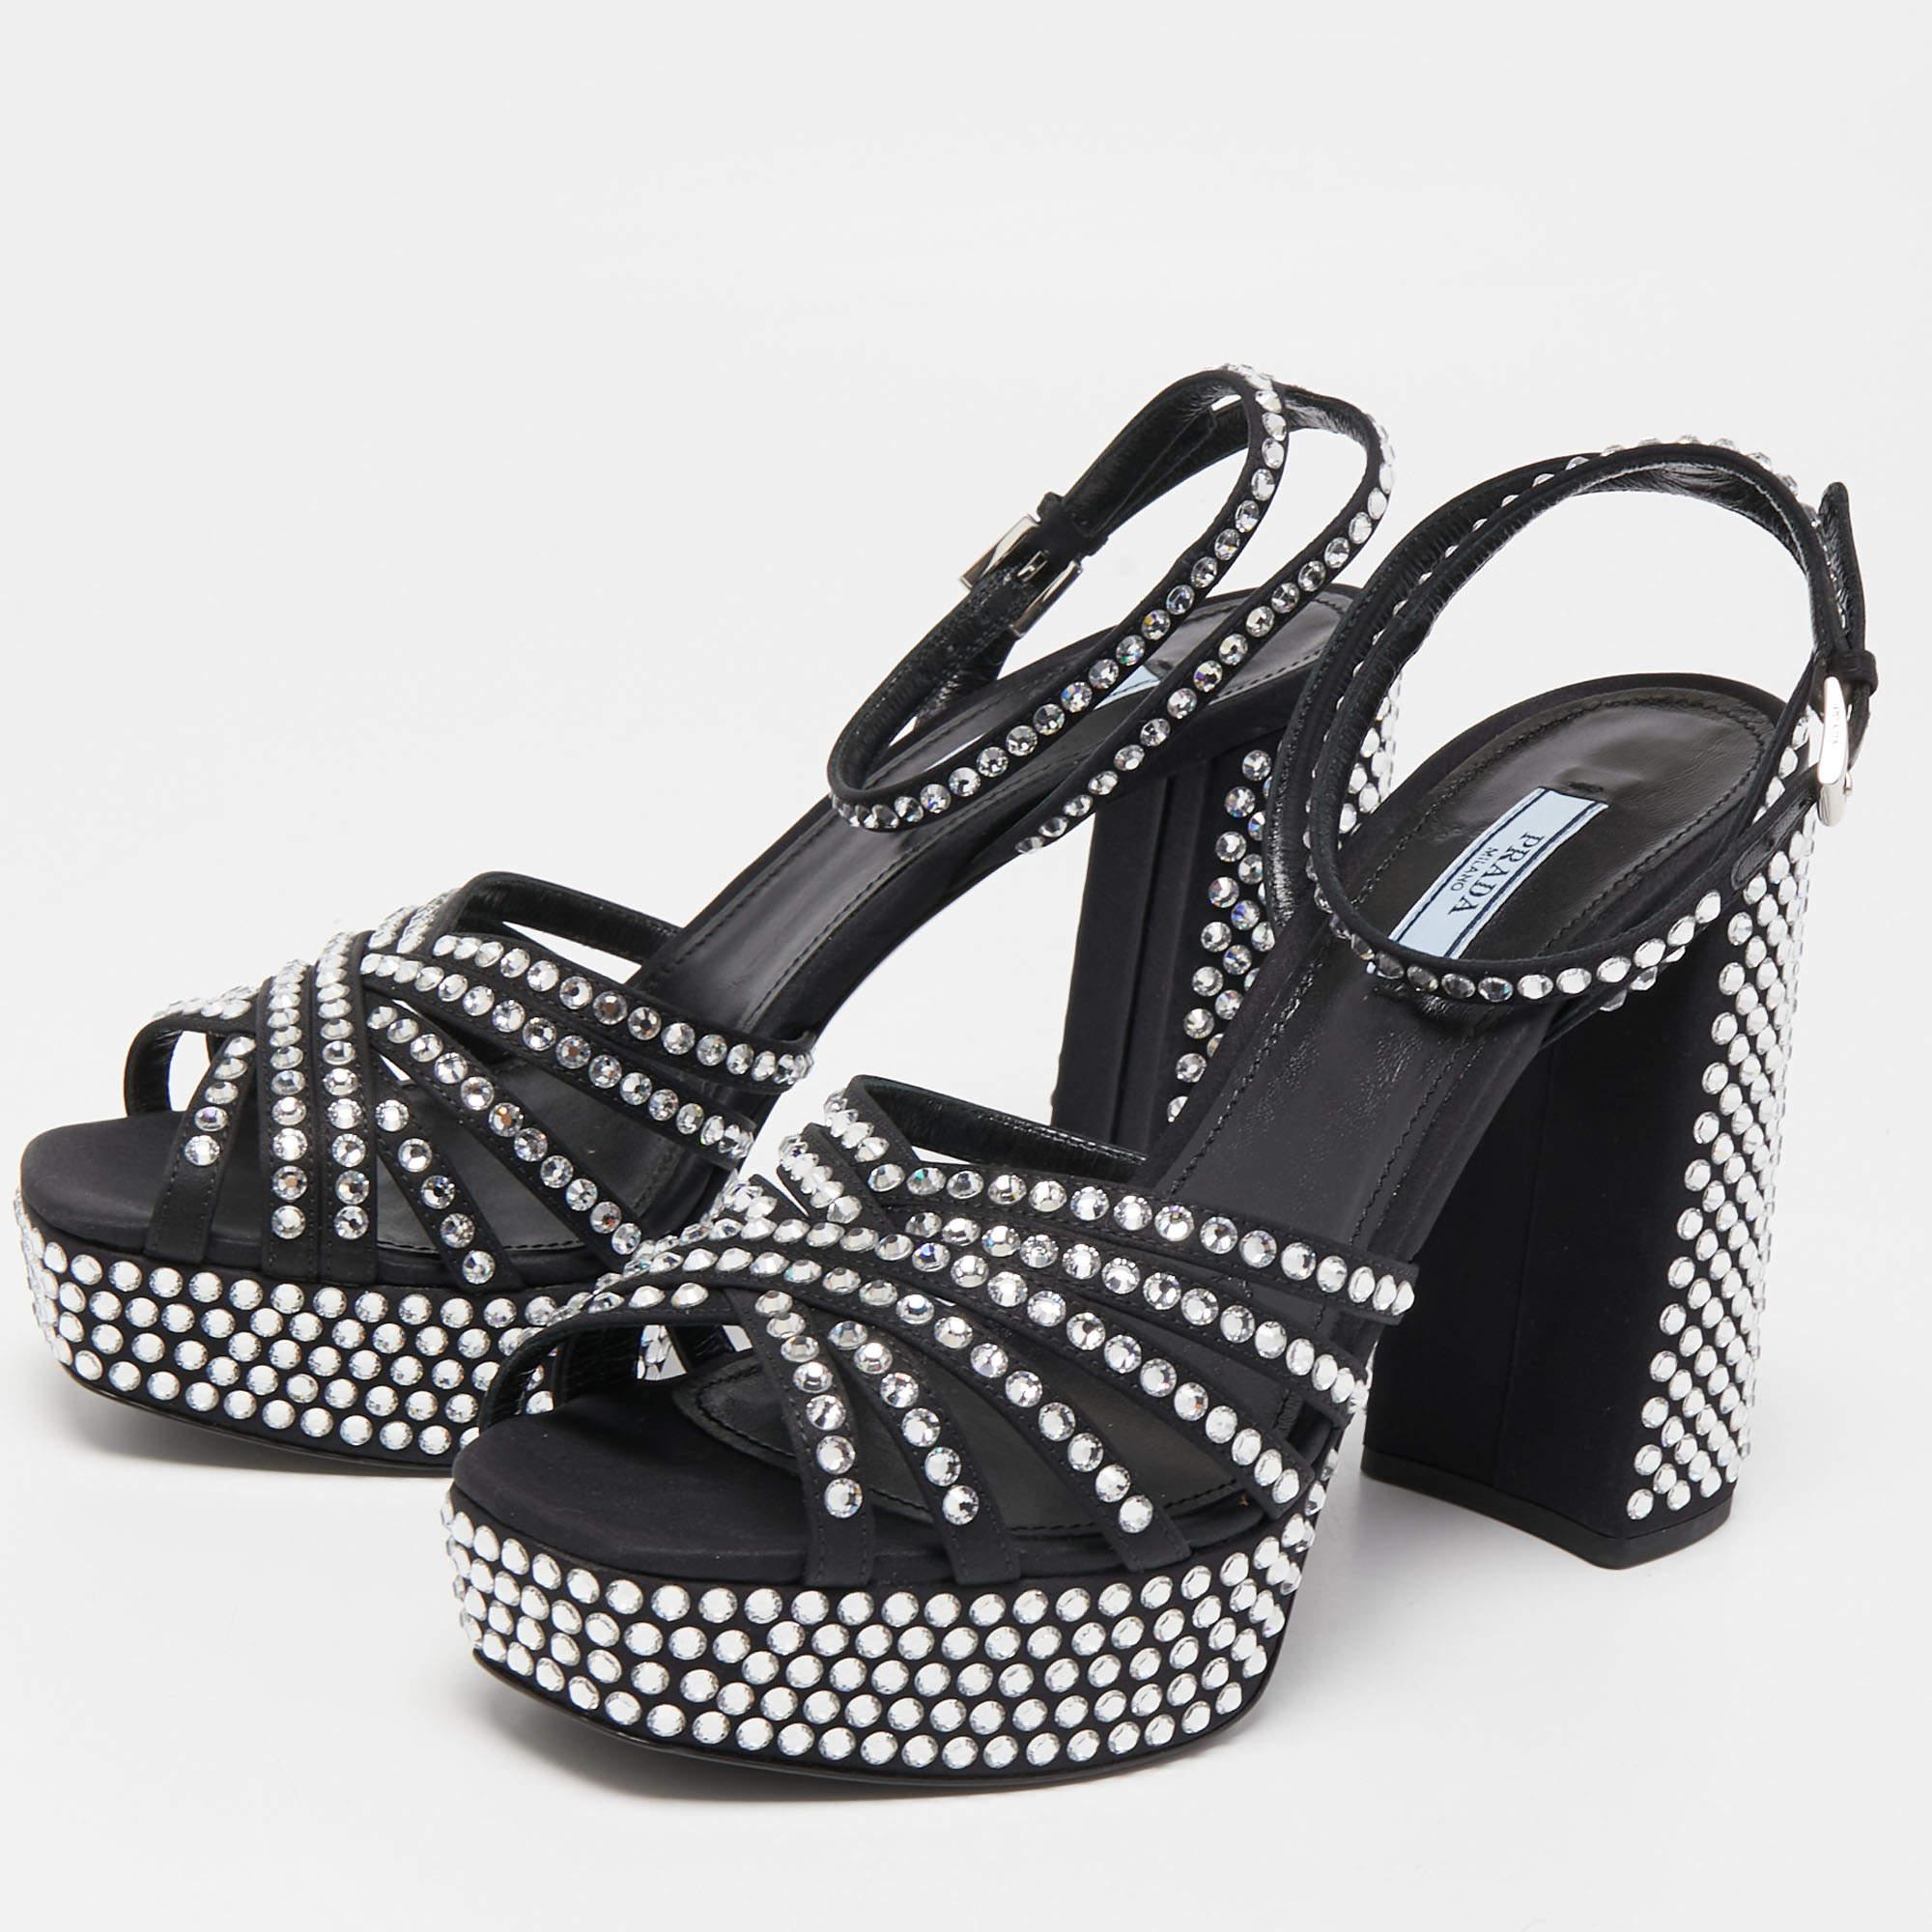 Prada Black Suede Crystal Embellished Ankle Strap Sandals Size 39 4